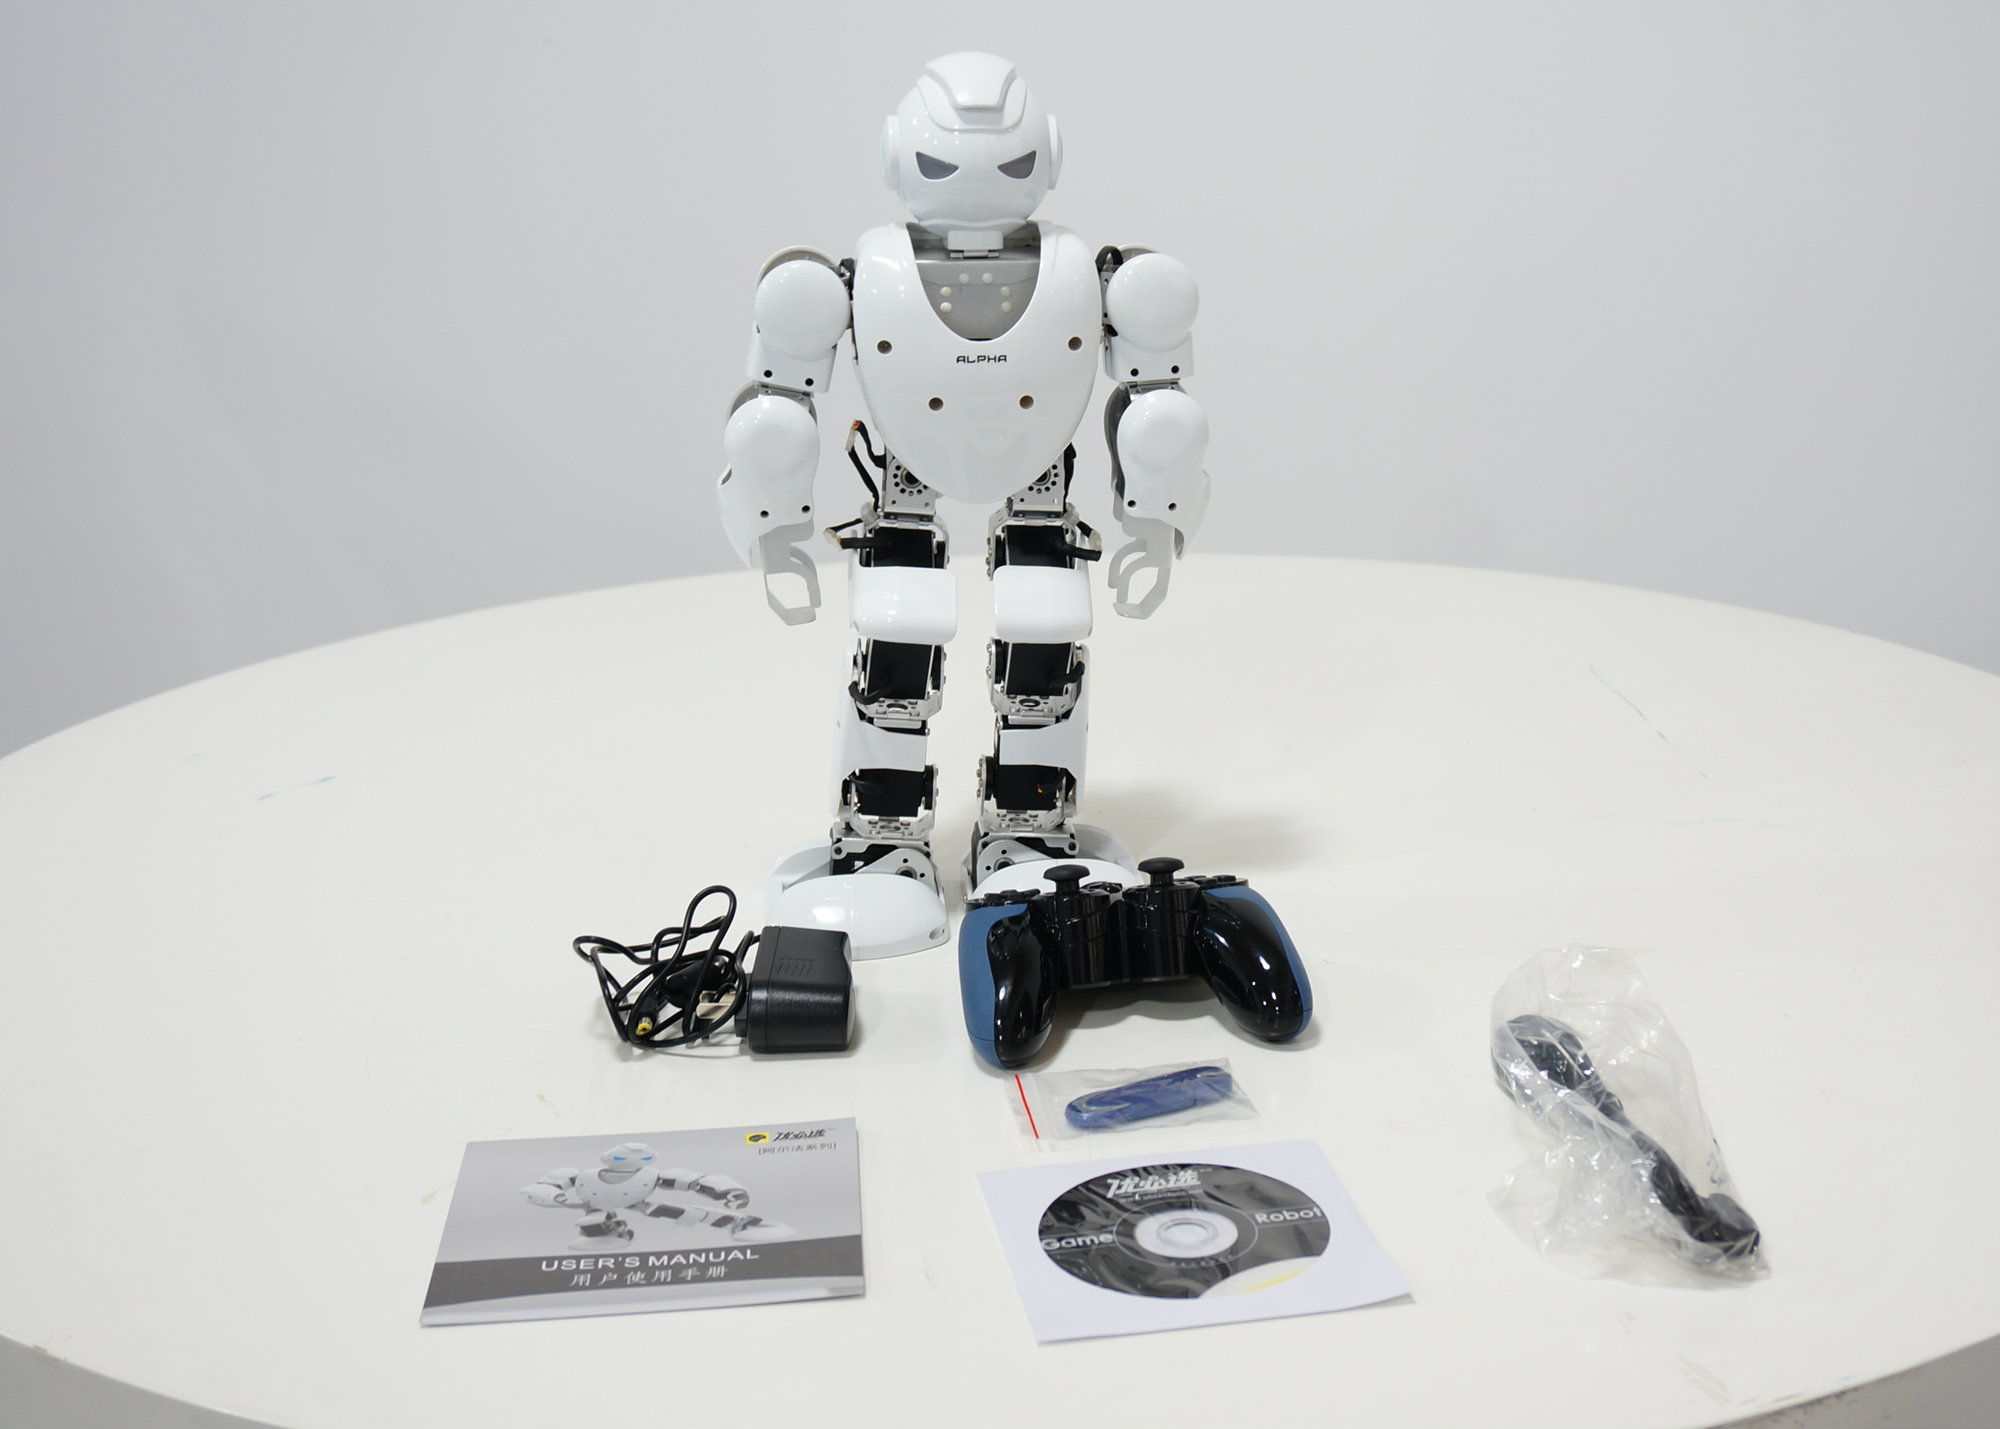 阿尔法 Alpha 机器人表演 机器人商演 机器人租赁